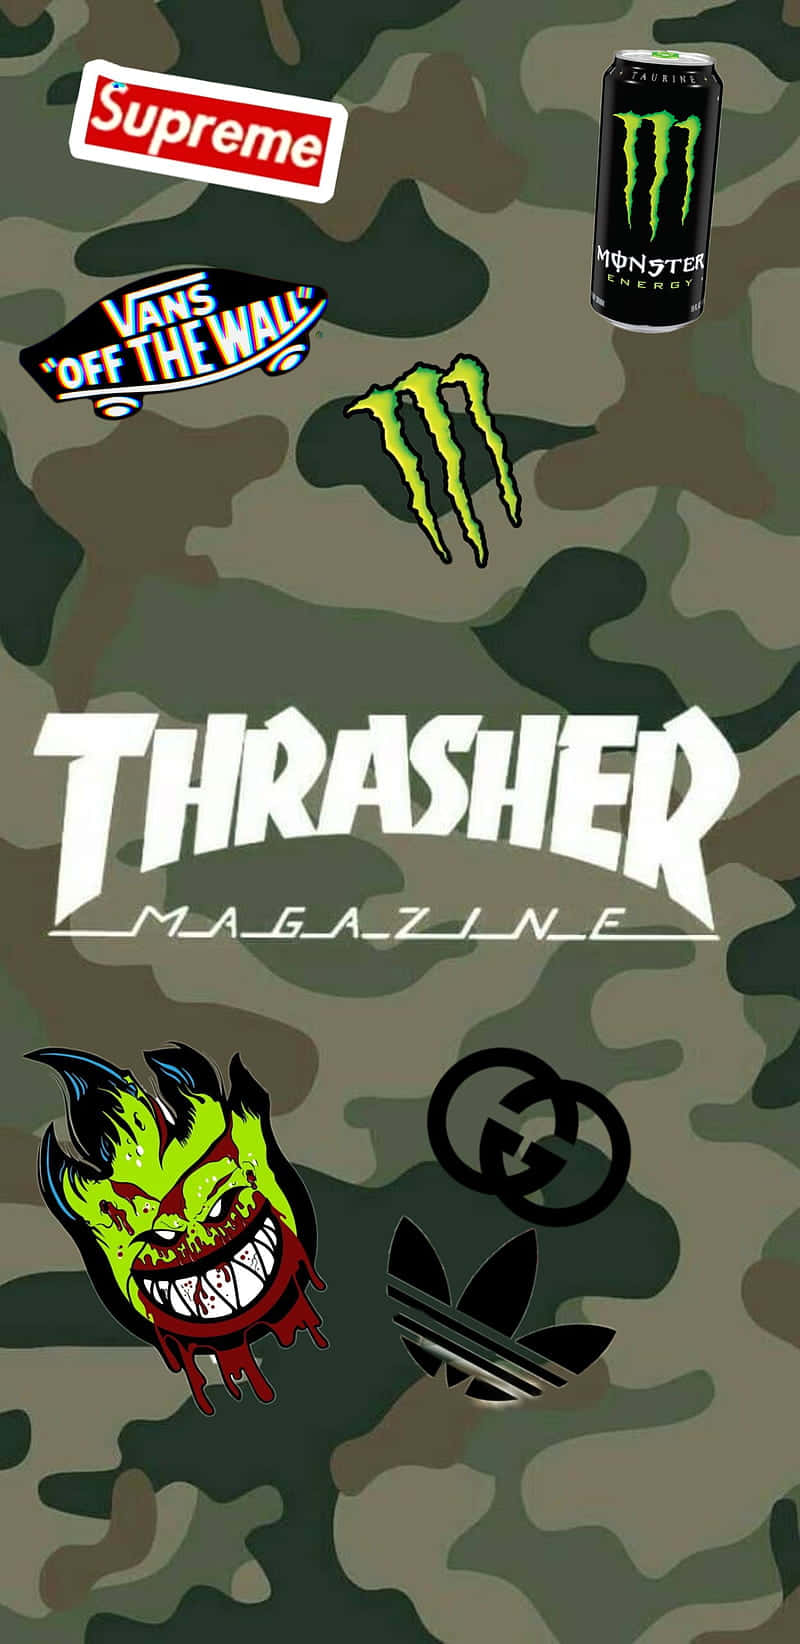 Spitfire Skate Logo på Thrasher Magazine Cover Wallpaper